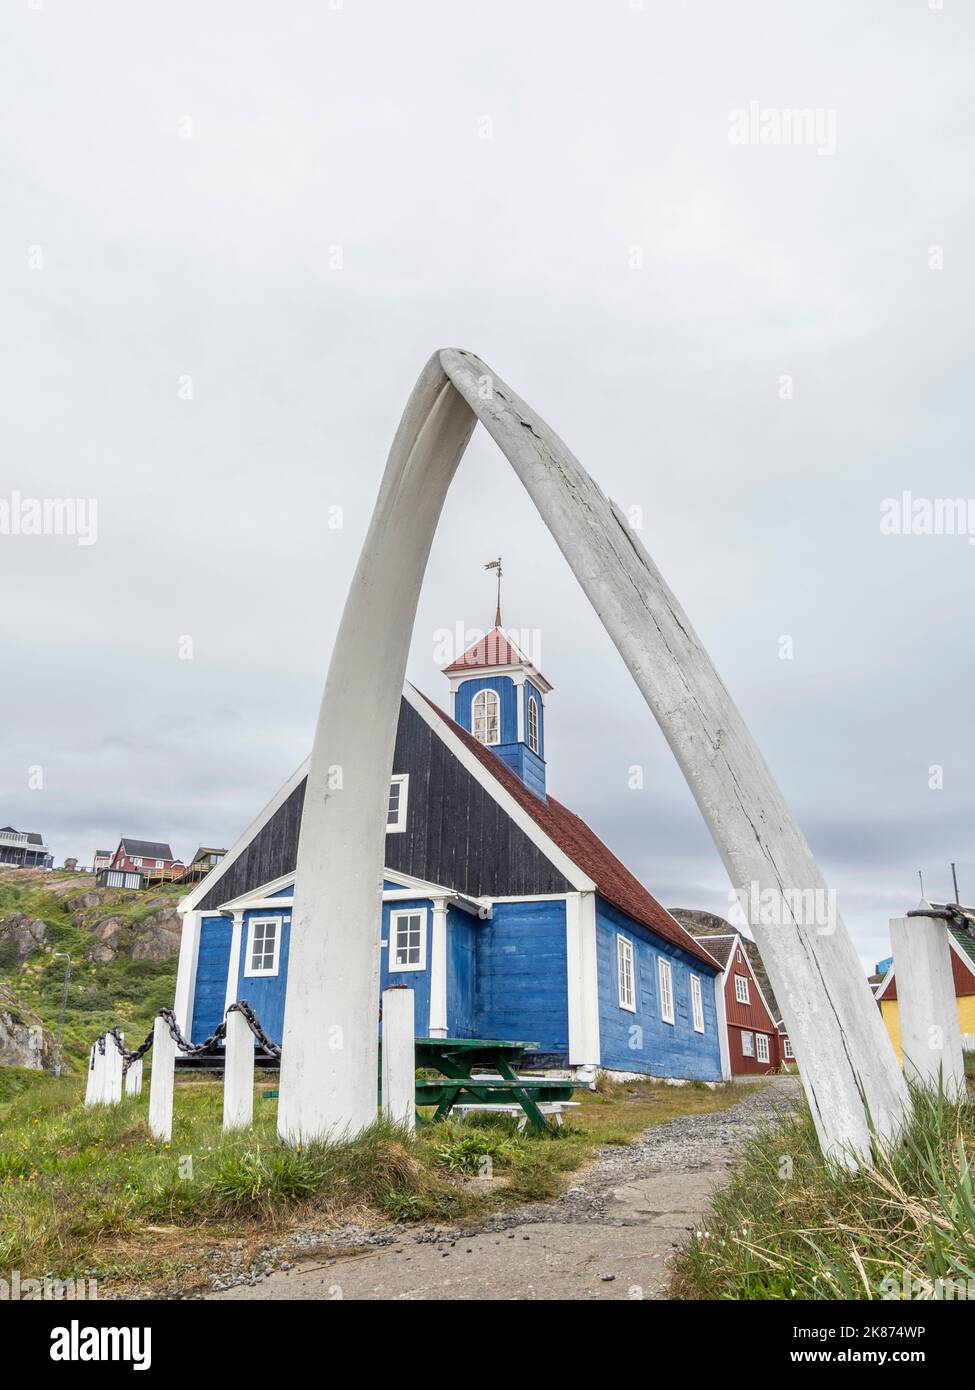 Vue extérieure de l'église Bethel, construite en 1775, dans le centre-ville de Sisimiut, Groenland, Danemark, régions polaires Banque D'Images